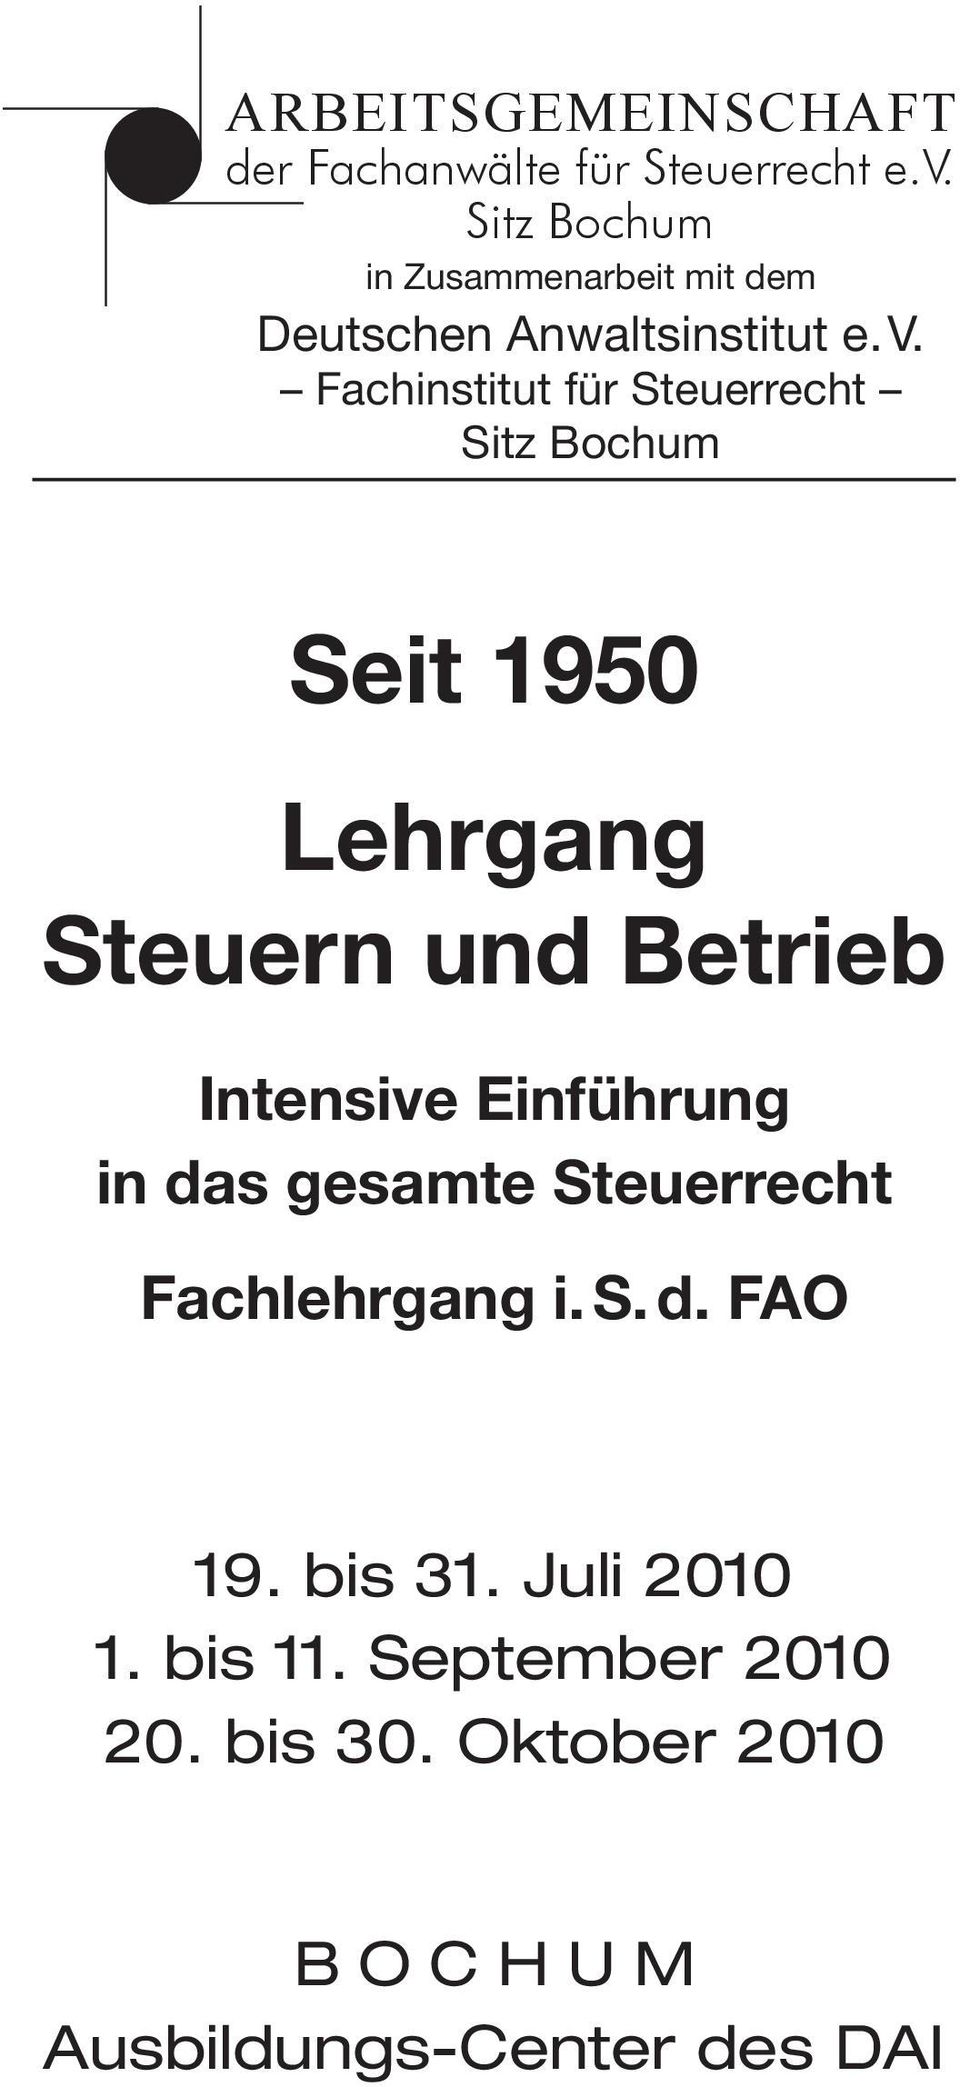 Fachinstitut für Steuerrecht Sitz Bochum Seit 1950 Lehrgang Steuern und Betrieb Intensive